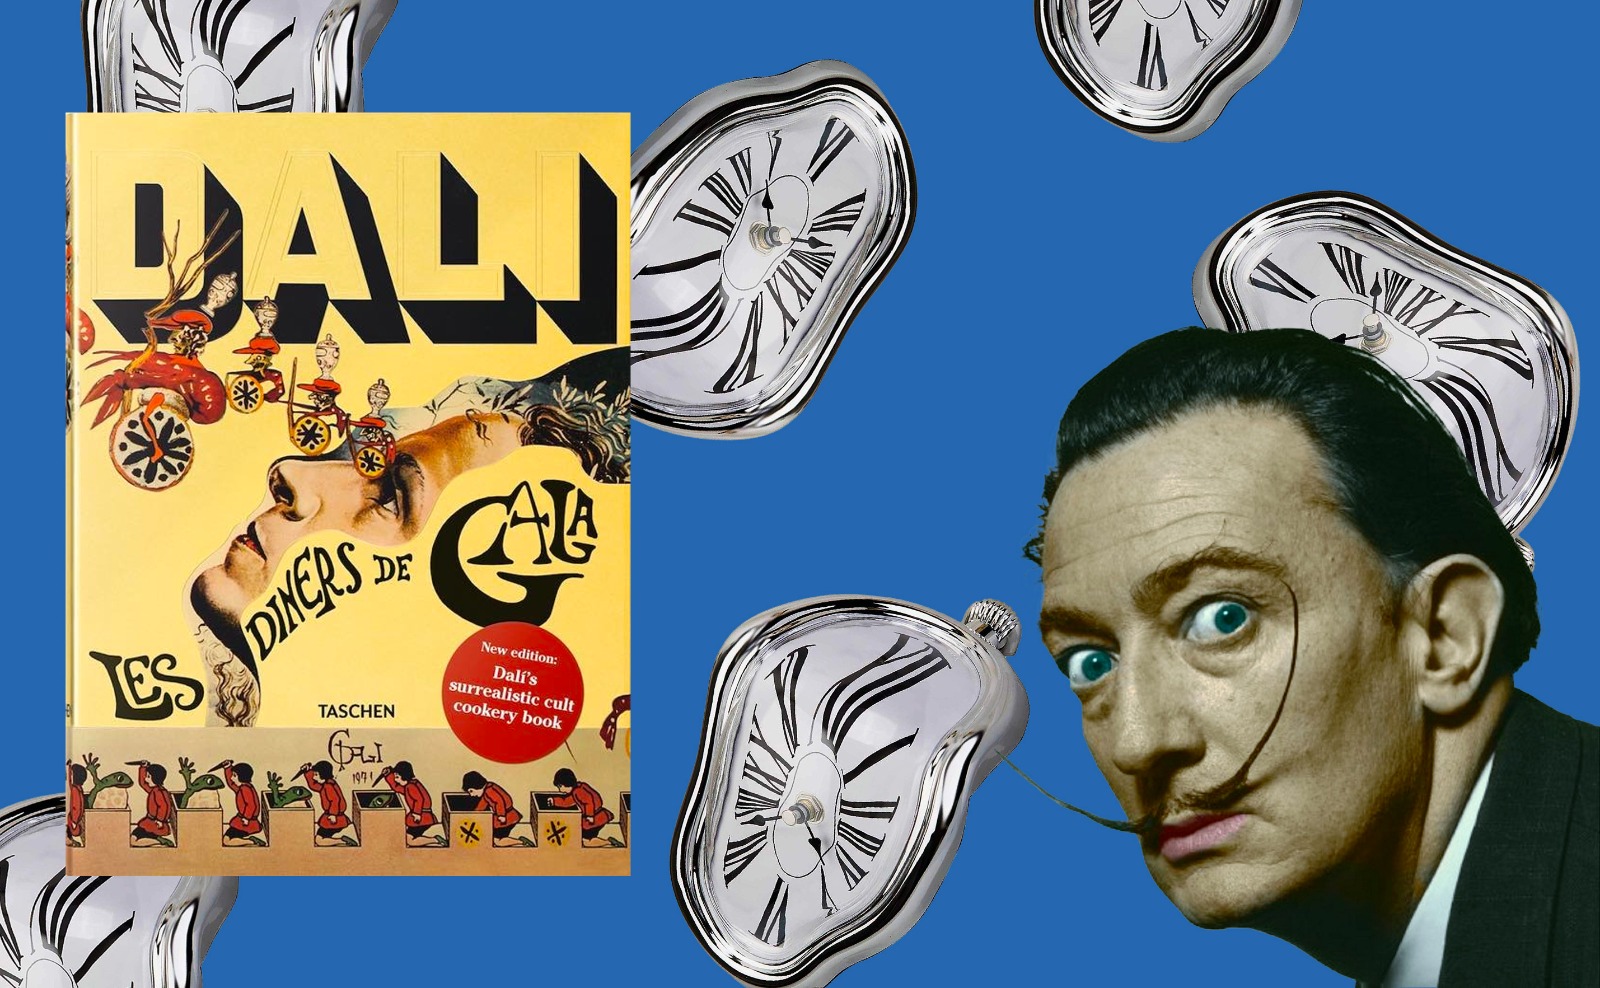 Il libro della settimana. “Les diners de Gala” di Salvador Dalì.